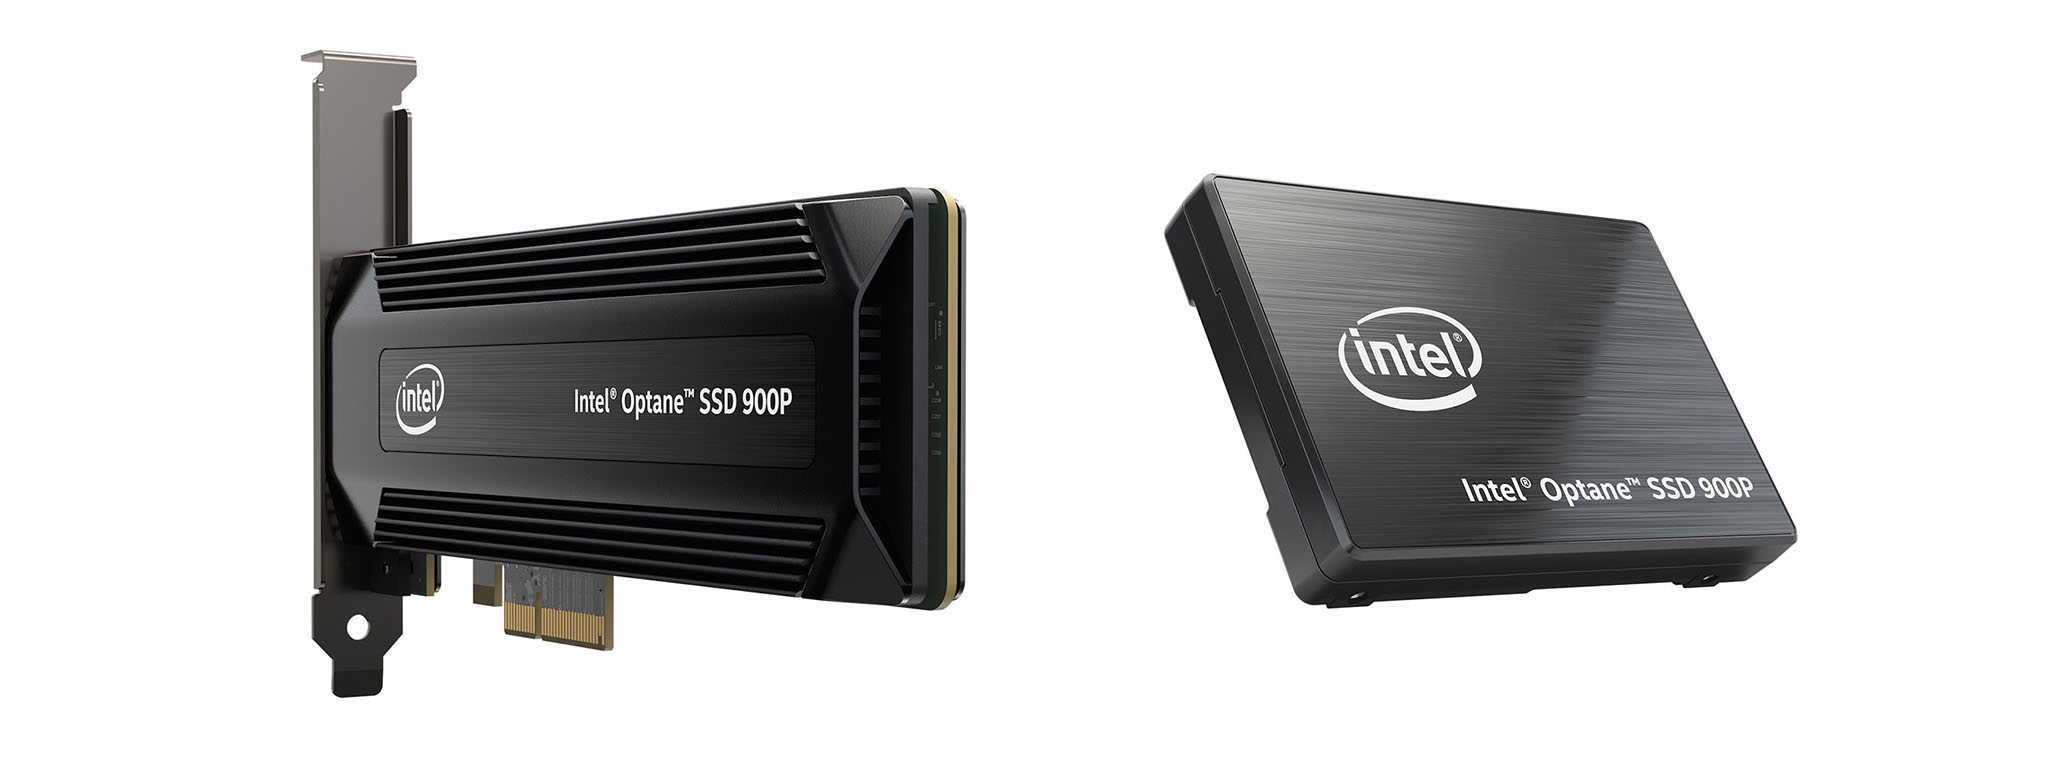 Intel ra mắt Optane SSD 900P, nhanh gấp 4, bền gấp 22 lần SSD flash NAND, giá từ 389 USD